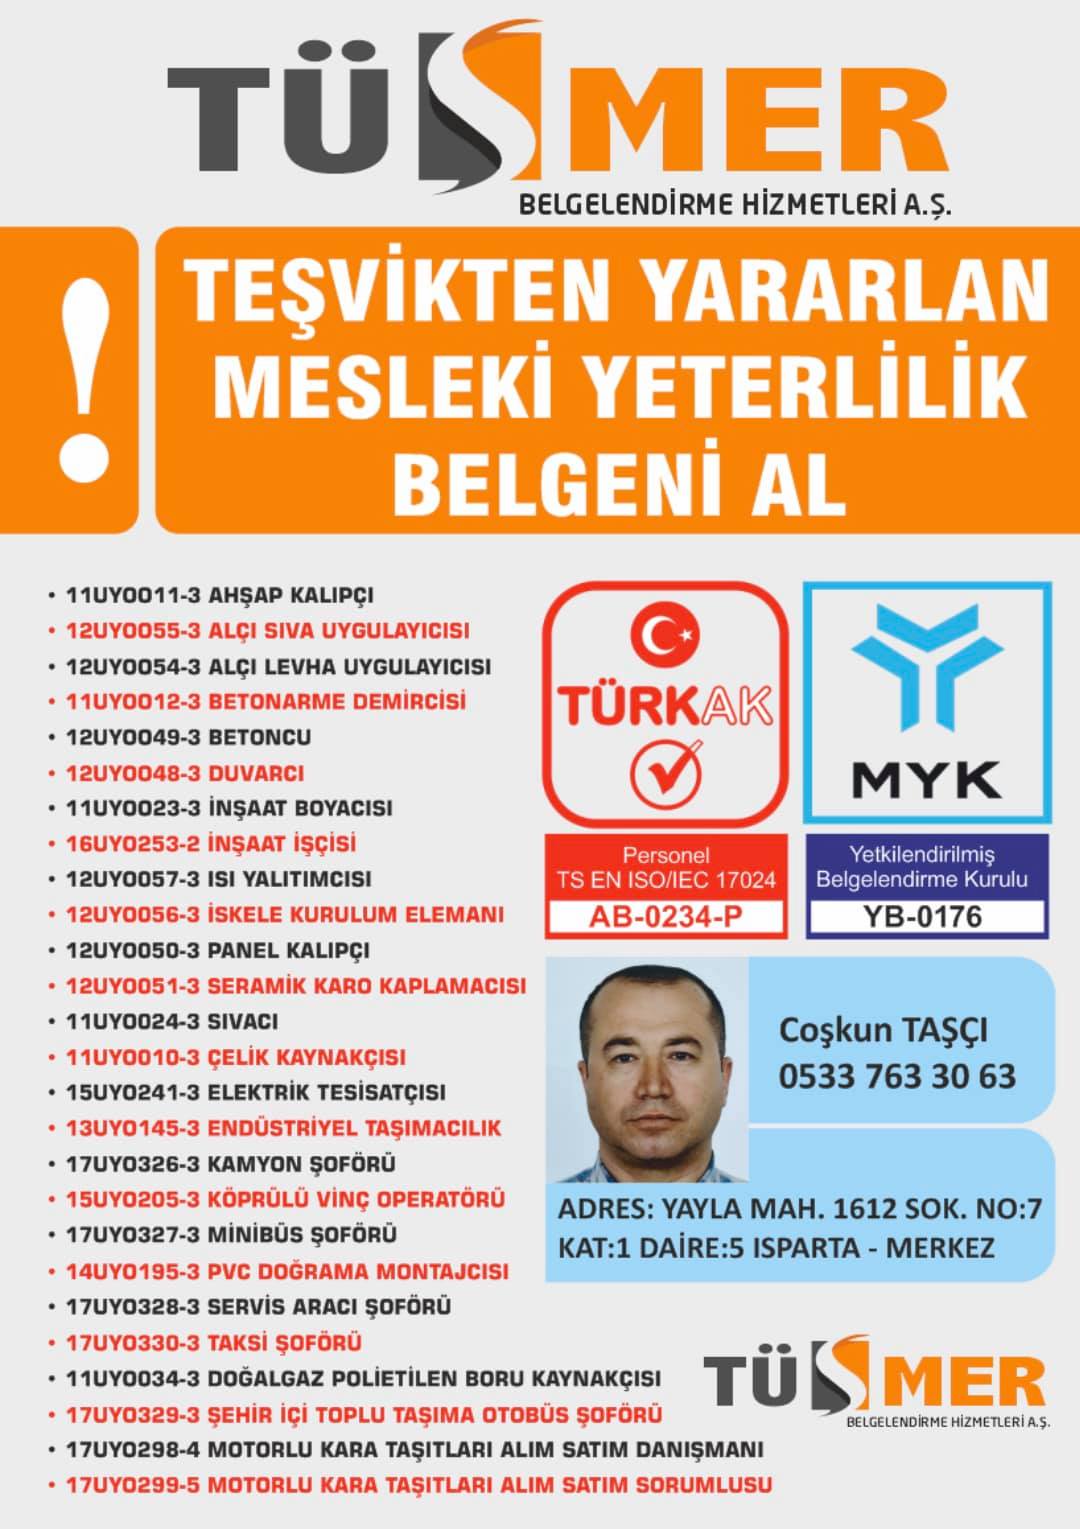 MYK MESLEKİ YETERLİLİK BELGESİ Gürsel Kâğıthane İstanbul